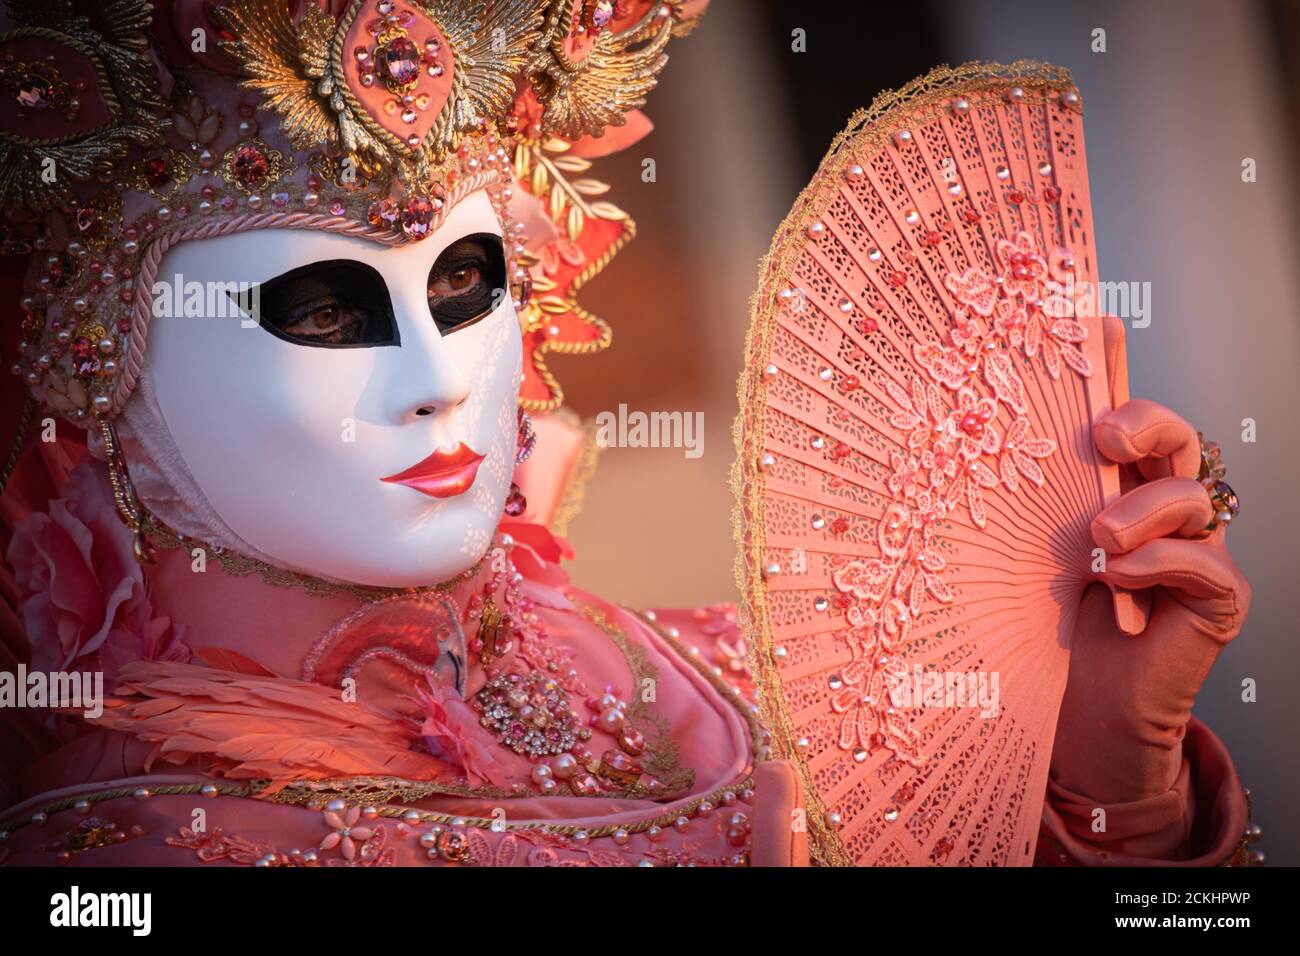 Disfraz/máscara de carneval tradicional posando temprano por la mañana en el paseo marítimo durante un amanecer en el carnaval anual en Venecia, Italia Foto de stock